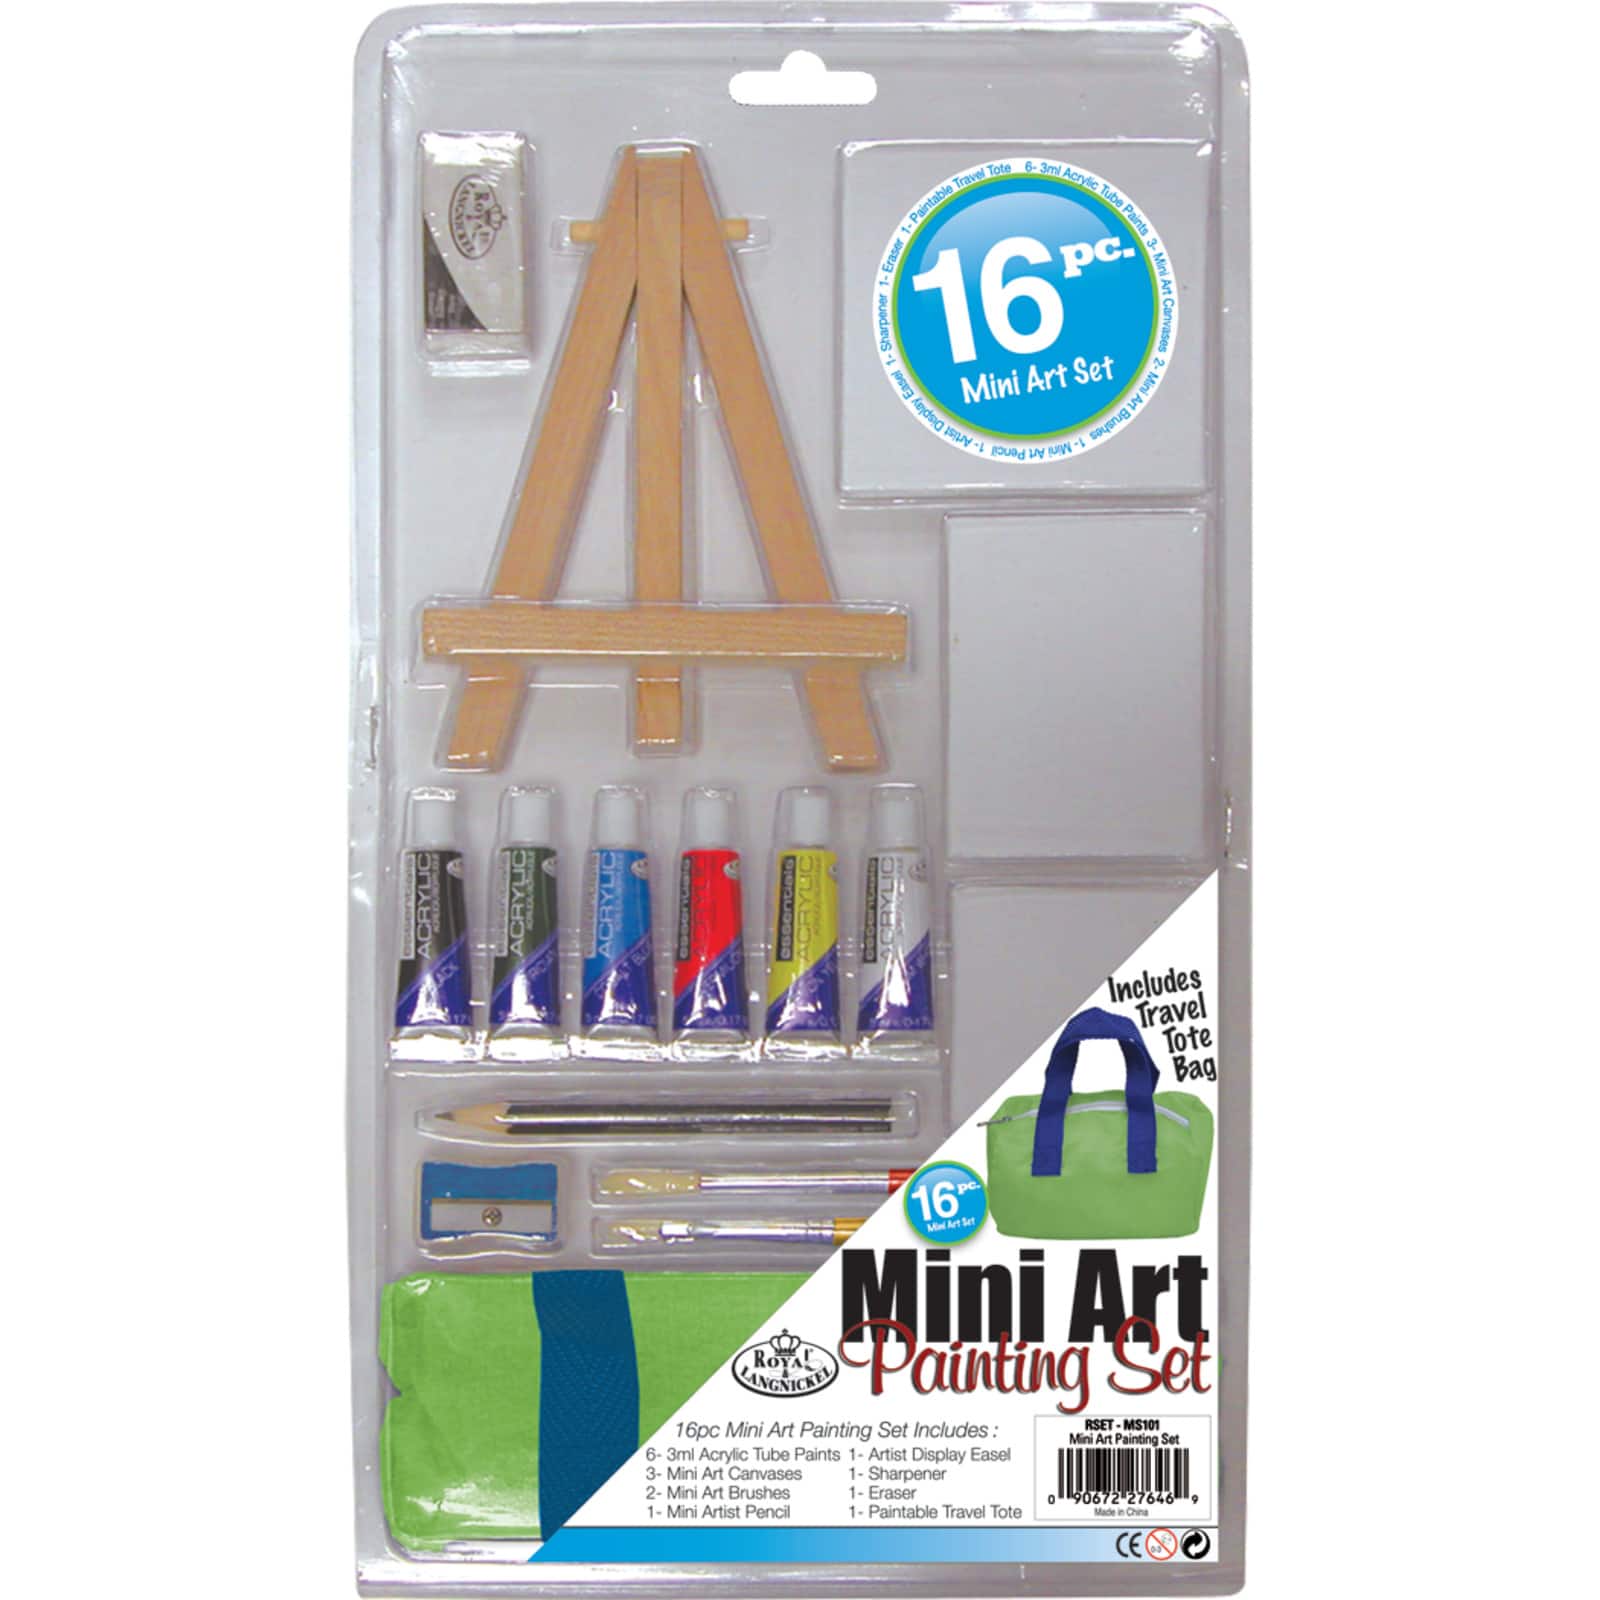 Mini painting kit for kids 